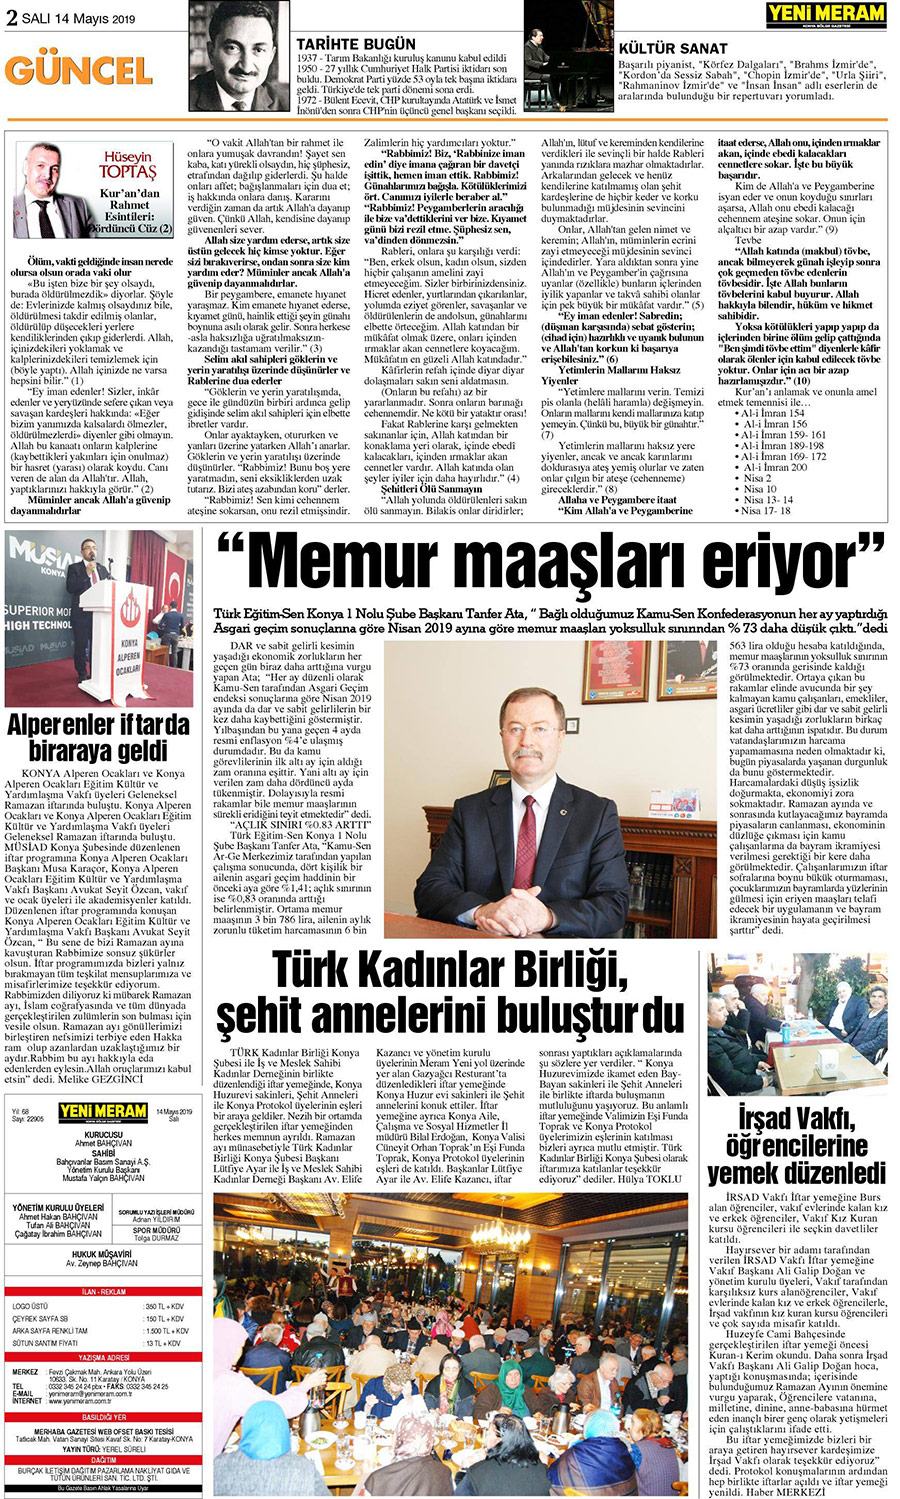 14 Mayıs 2019 Yeni Meram Gazetesi